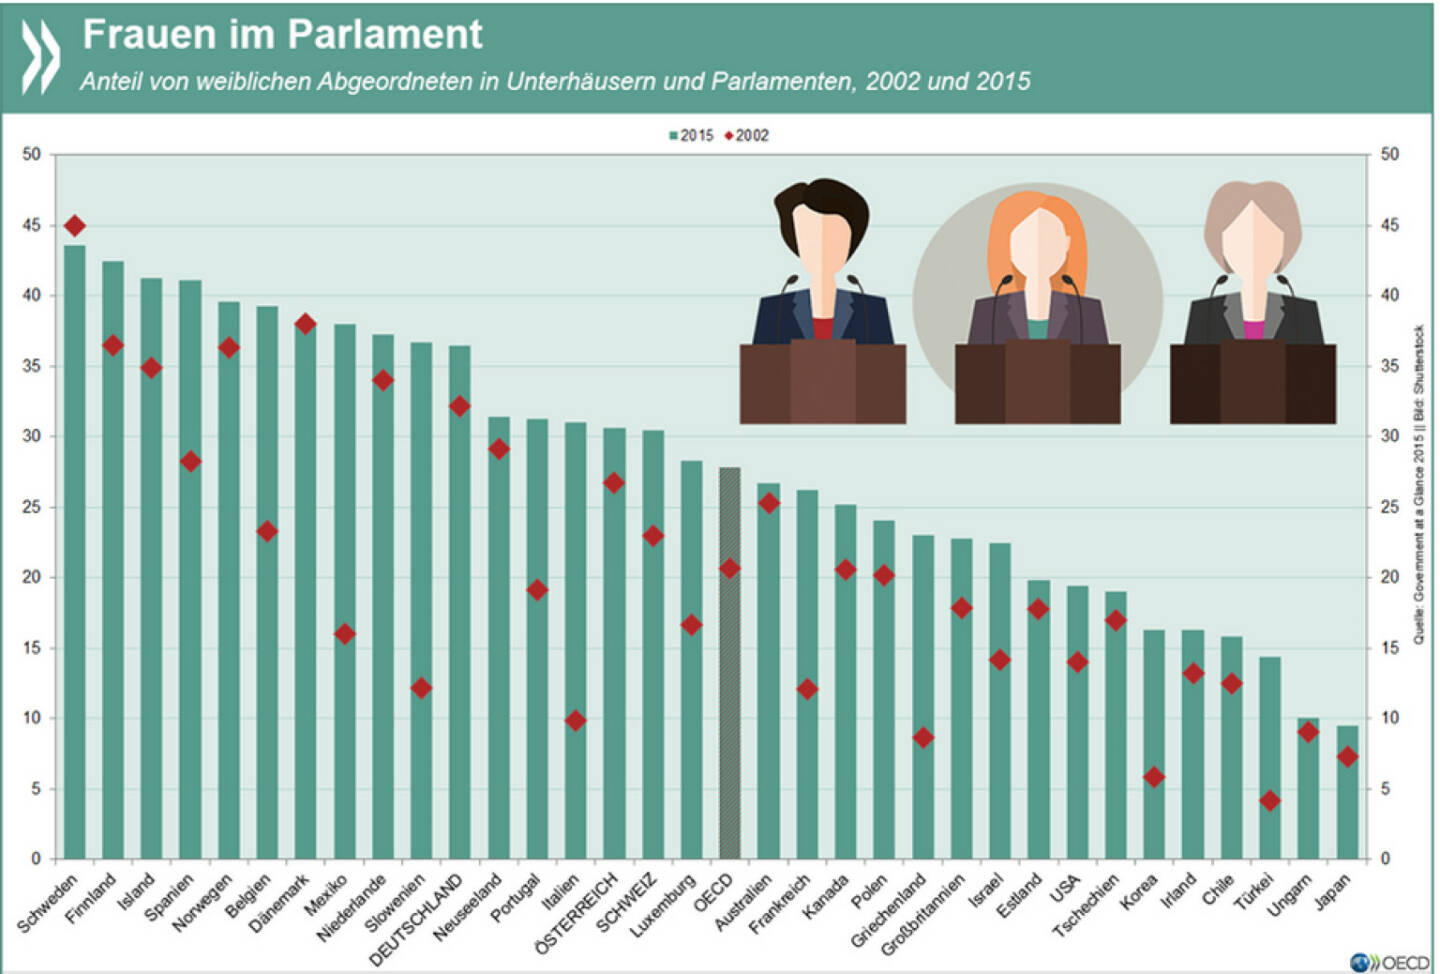 Female touch: In den meisten Parlamenten in OECD-Ländern ist der Anteil der Frauen seit Anfang der 2000er Jahre gestiegen. Im OECD-Durchschnitt ist aber noch immer nur gut jedes vierte Parlamentsmitglied weiblich.
Mehr Infos zu Frauen in der Politik unter: http://bit.ly/1hahPsZ